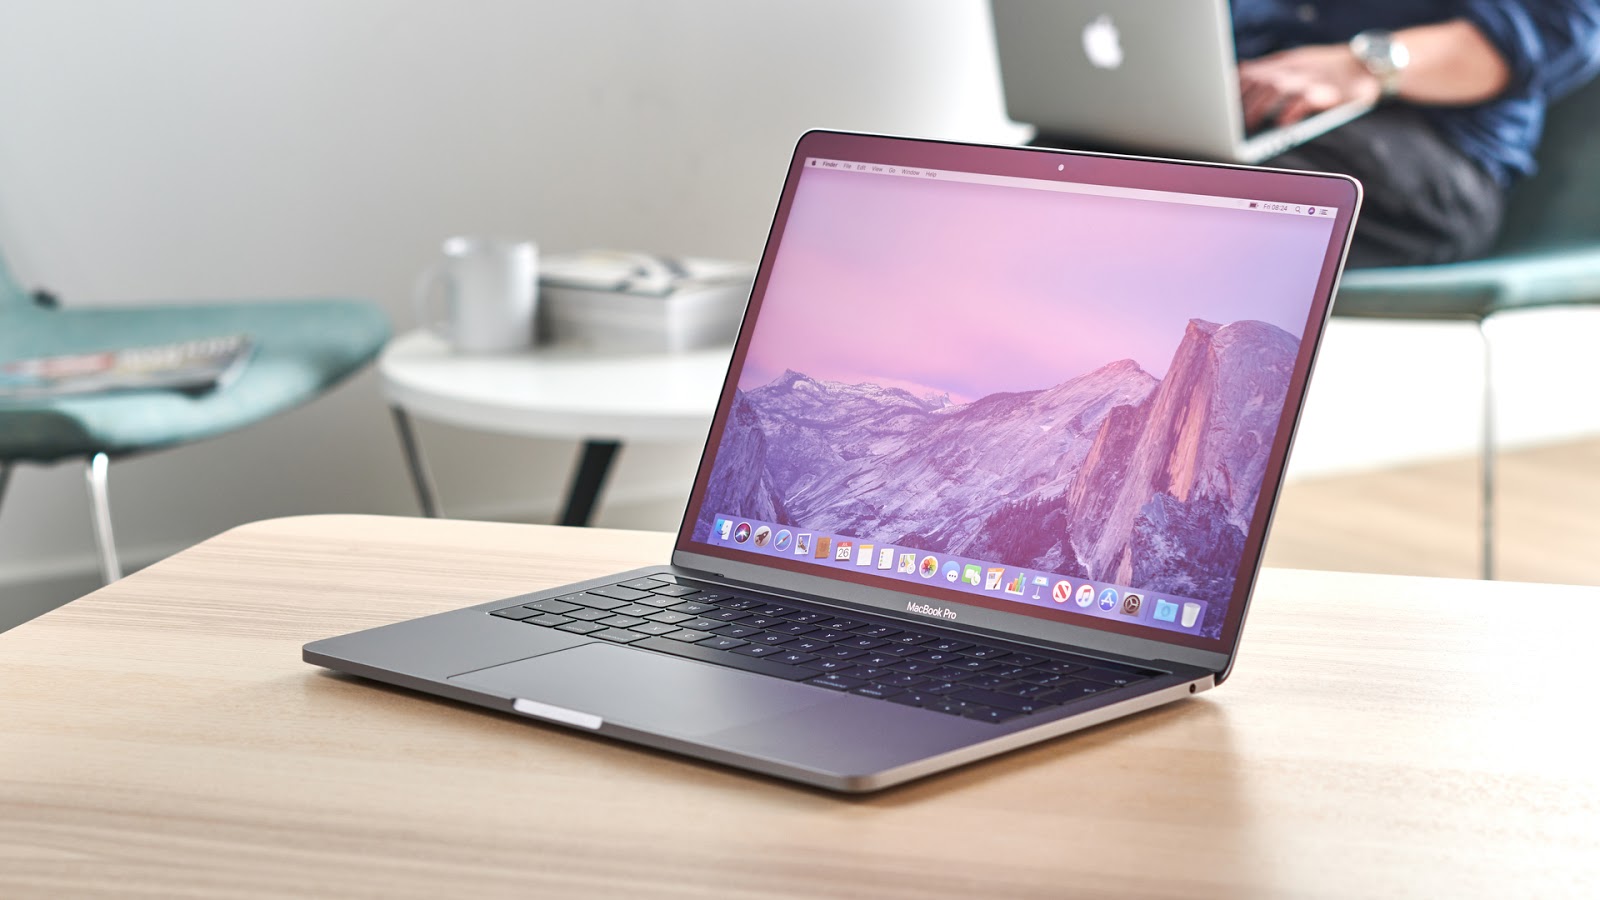 MacBook Pro 13 2020, Kini dengan Spesifikasi Hebat - TeknoReview